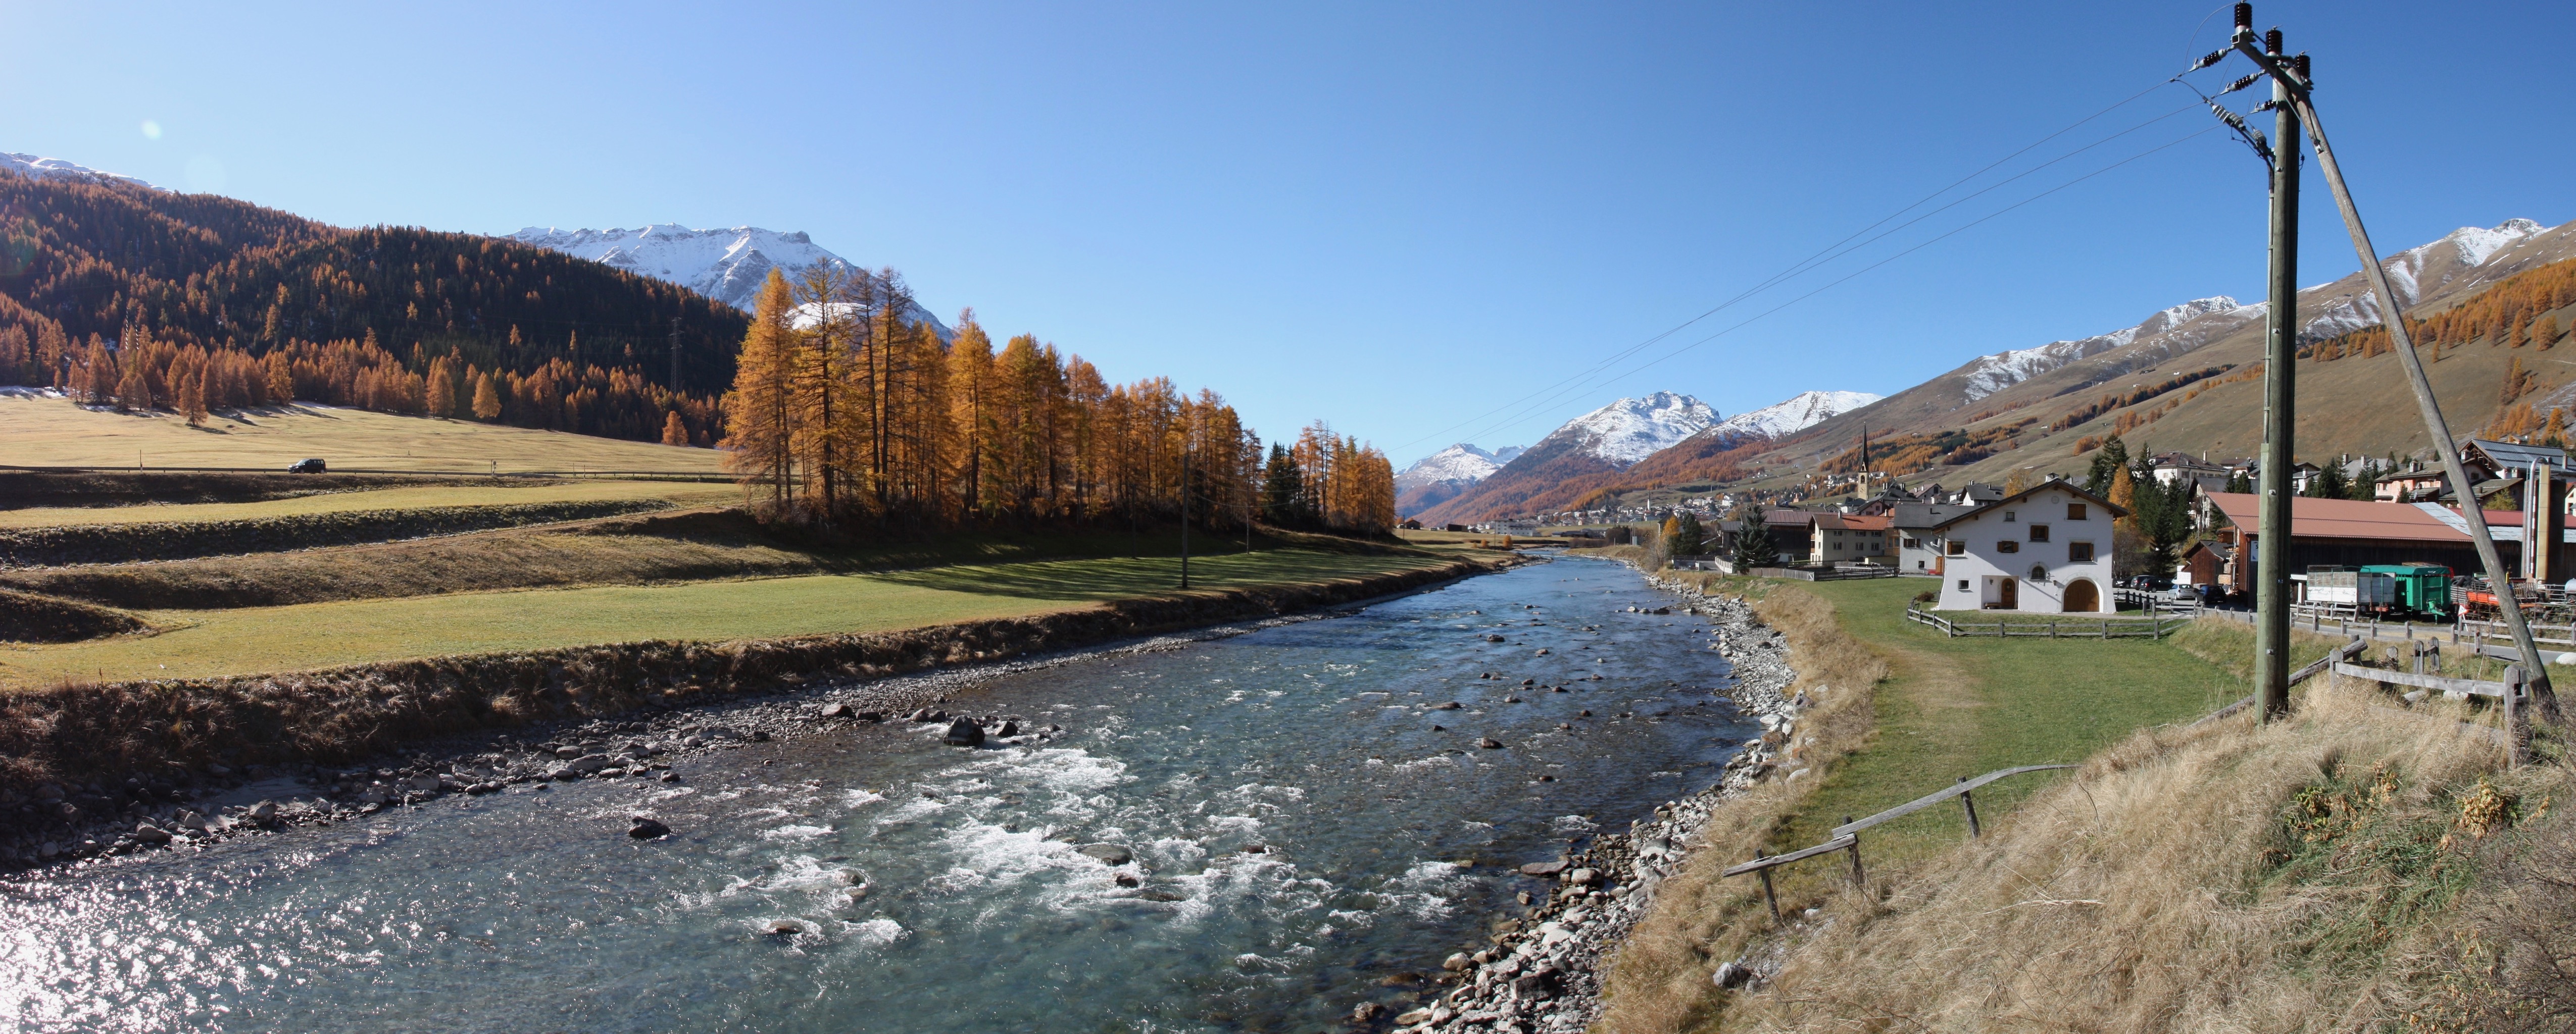 Inn River, S-chanf, Maloja Region, Graubünden, Switzerland.